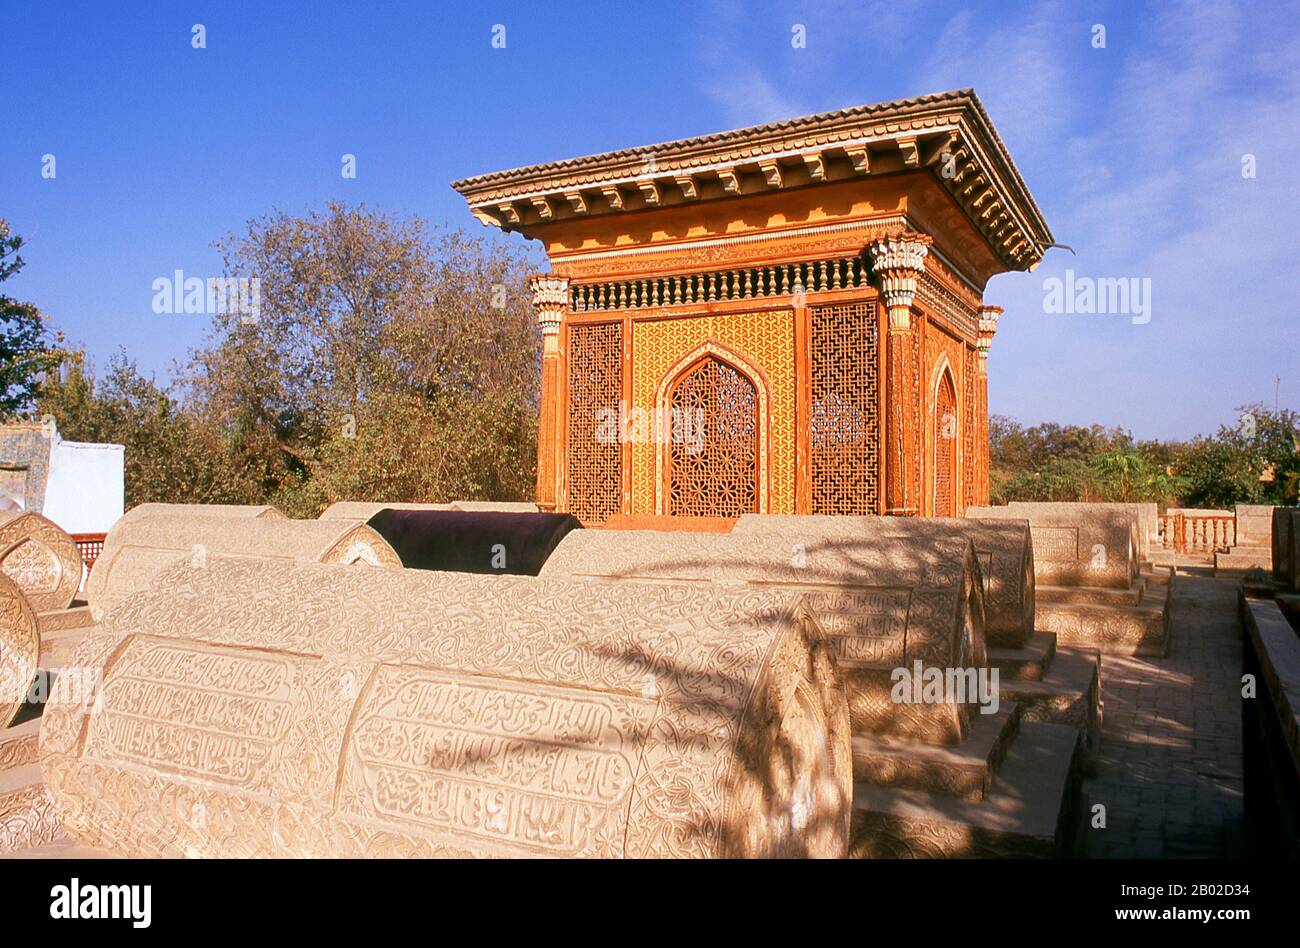 Il cimitero di Cheeltanlireem o il cimitero d'oro ospita le tombe di alcuni ex re di Yarkand e risale al 17th secolo d.C. L'importante oasi di Yarkand (Shache) era una volta sede di un antico regno buddista e di un importante caravanserai sulla Via della Seta Meridionale. Oggi è una città prevalentemente Uighur con una popolazione di 375.000 abitanti che producono cotone, grano, mais e frutta (in particolare melograni, pere e uva), nonché petrolio e gas naturale. In tempi passati Yarkand era di particolare importanza come il capolinea settentrionale per la strada commerciale strategicamente significativa per Leh, c. Foto Stock